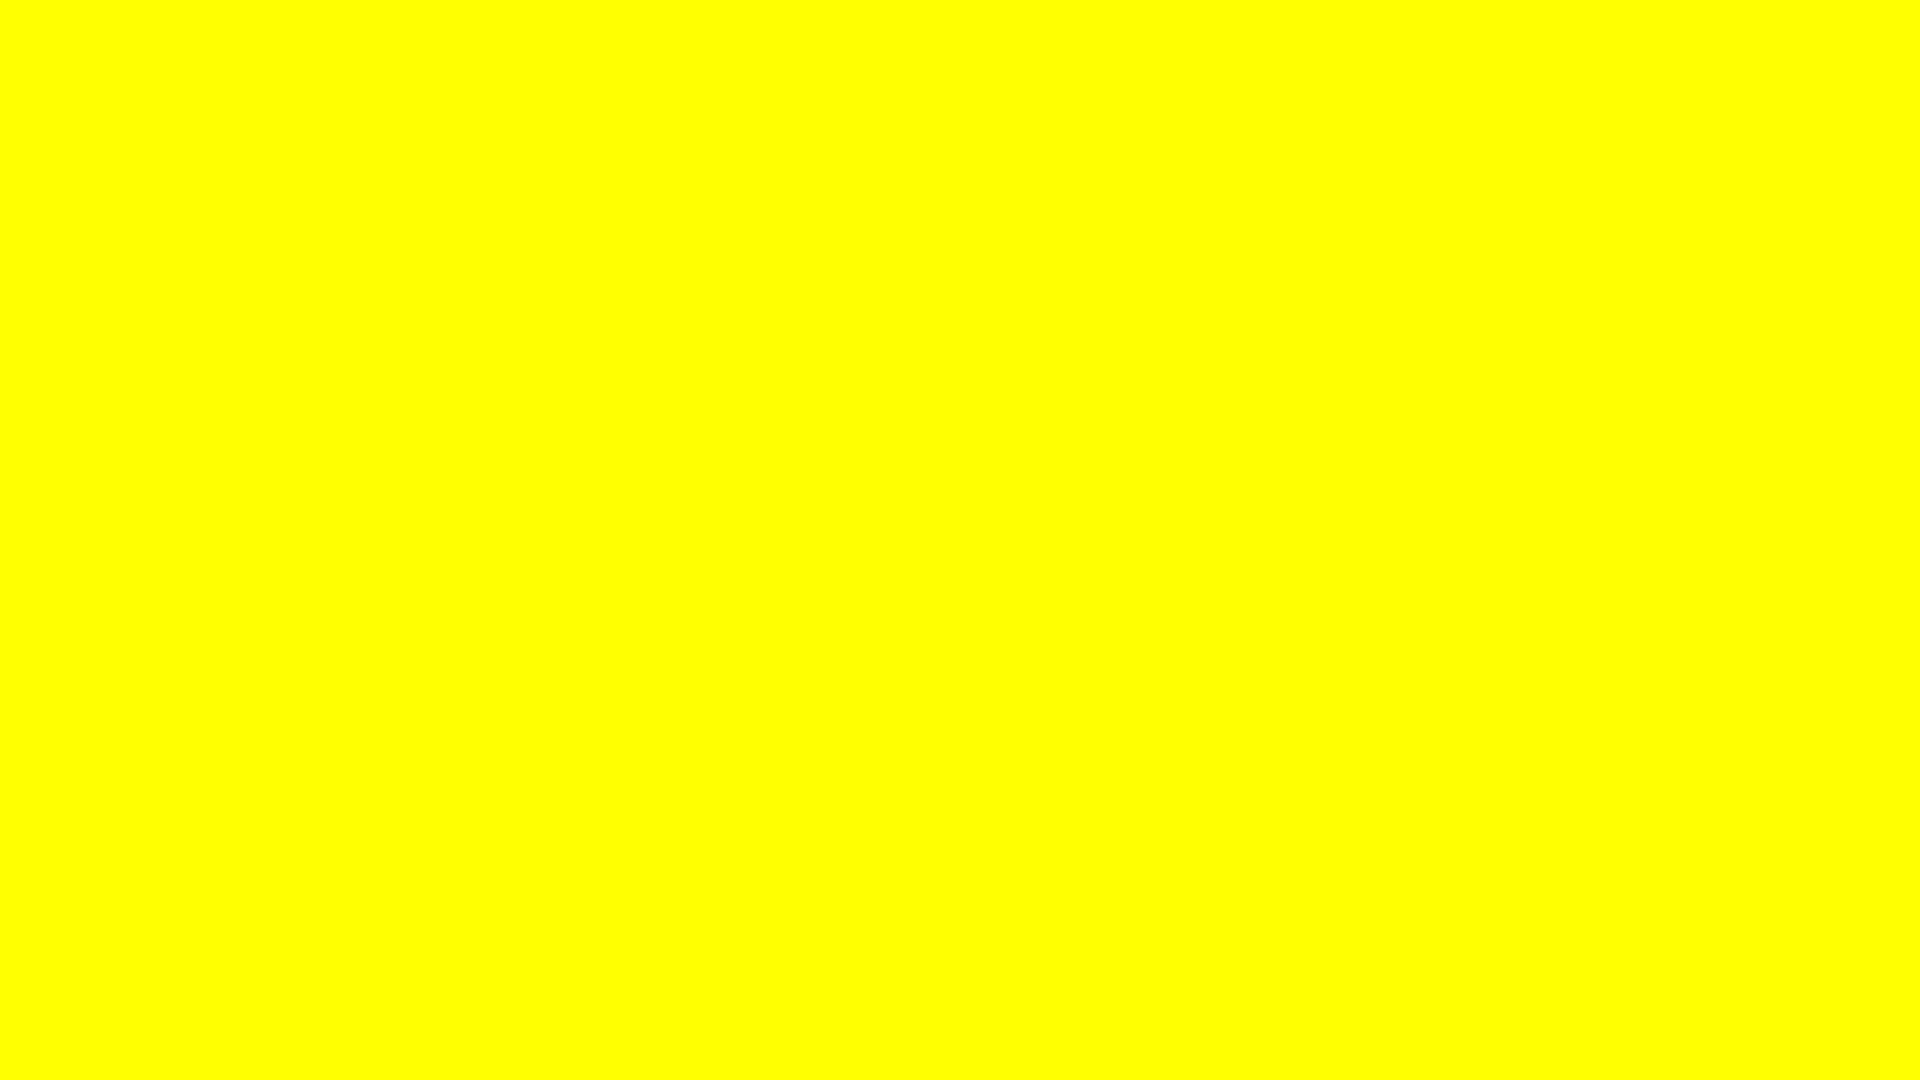 Spüredie Vibes Von Solid Yellow. Wallpaper